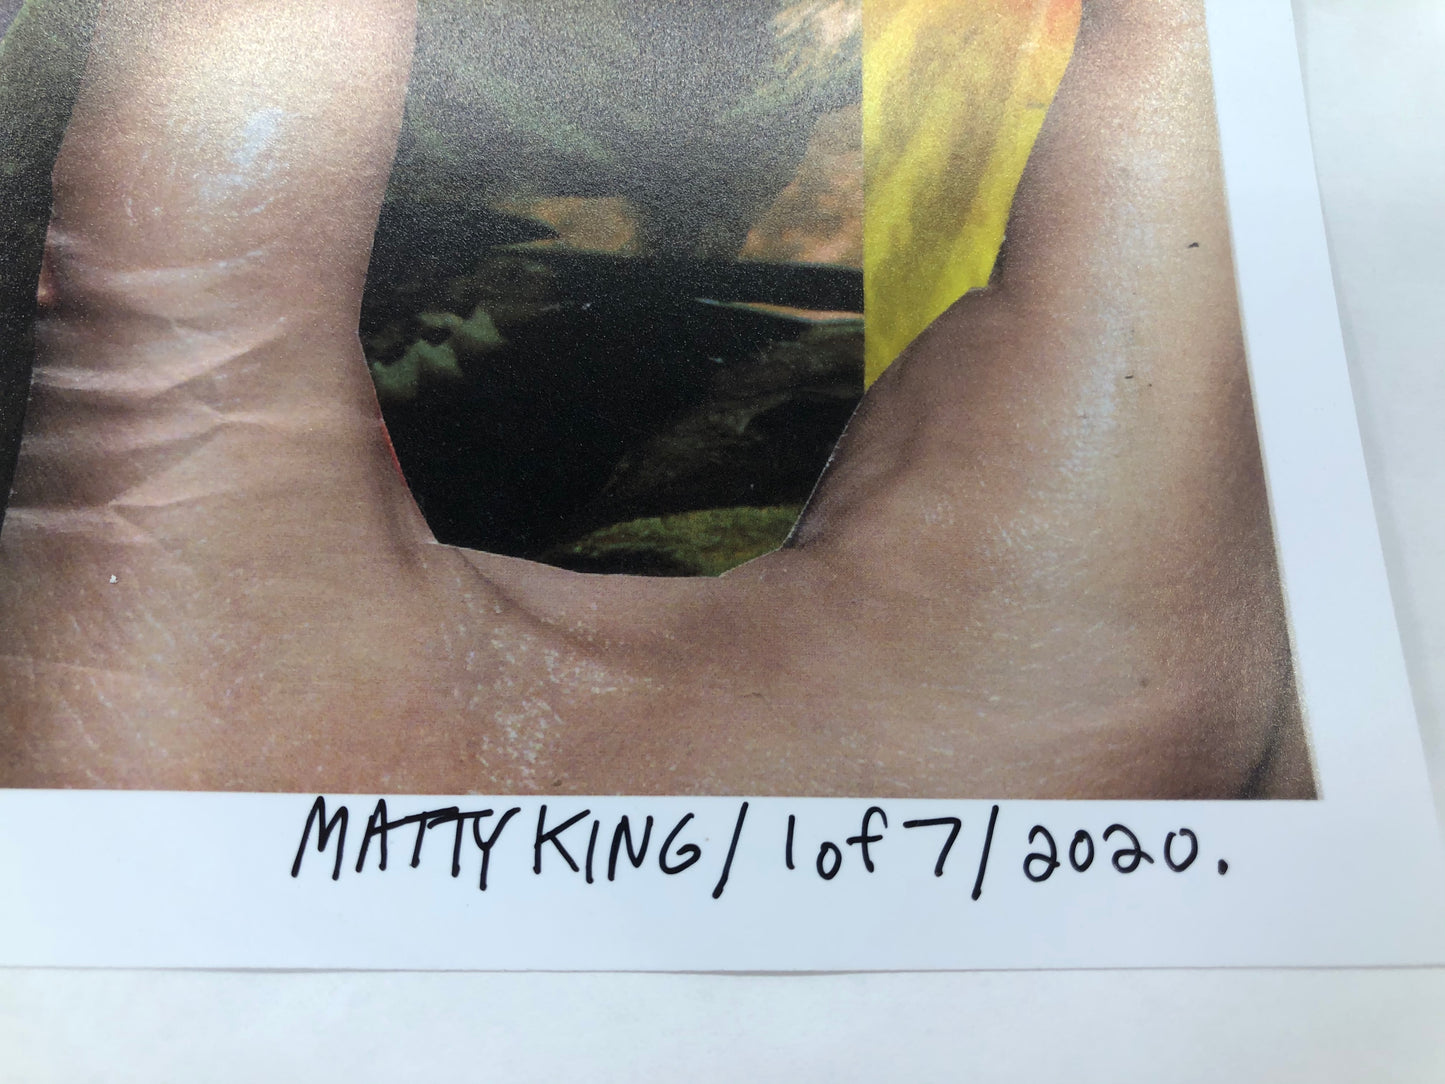 Matty King "Eagle Eye" (2012)